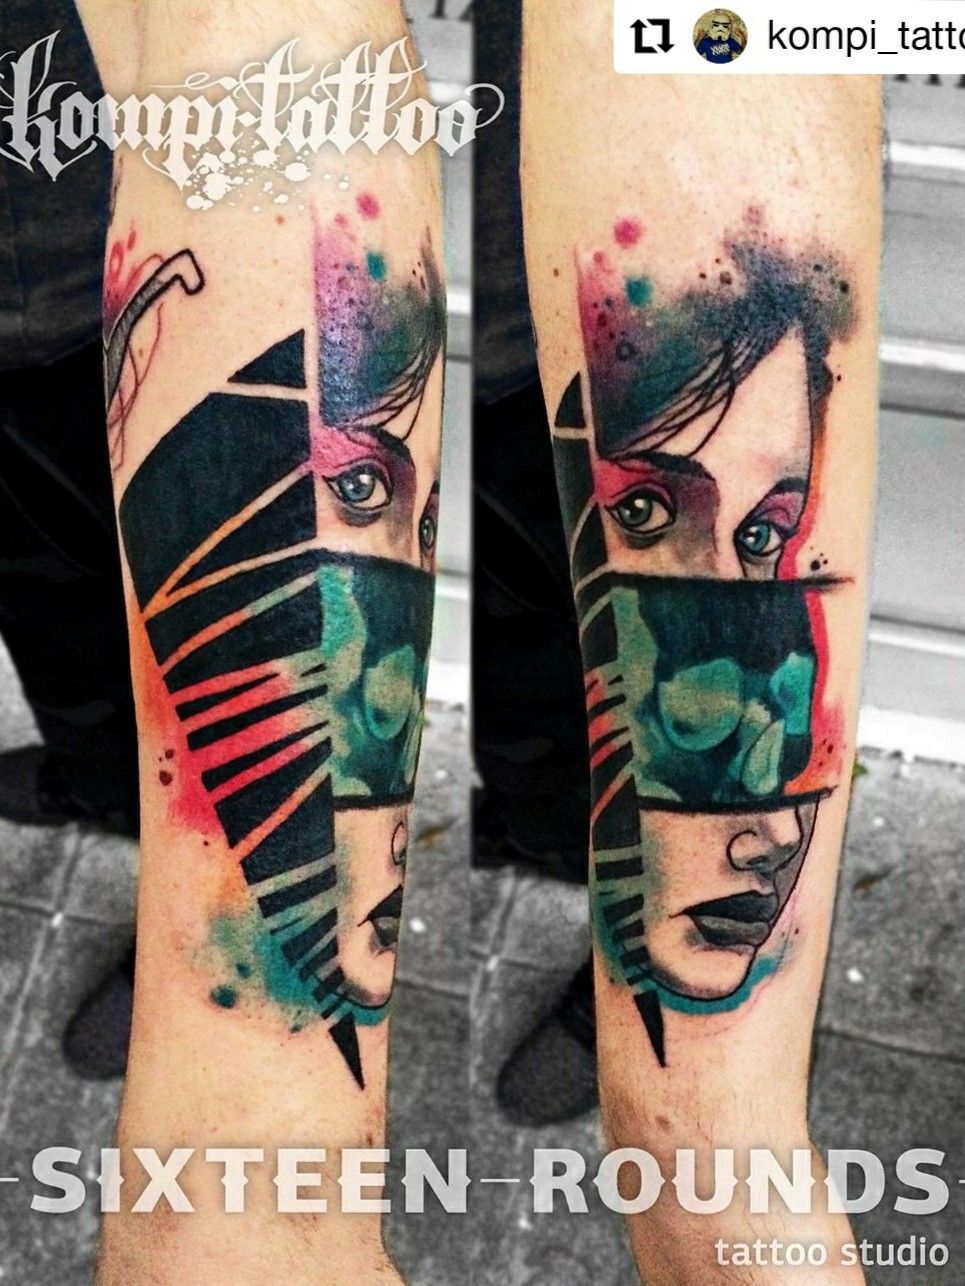 AATMAN TATTOOS BANGALORE on Instagram WOLF TATTOO RECENT WORK AT AATMAN  TATTOOS BANGALORE FOR APPOINTMENT CALL US AT 8277199412 tattoo tattooart  tattoolife tattoo